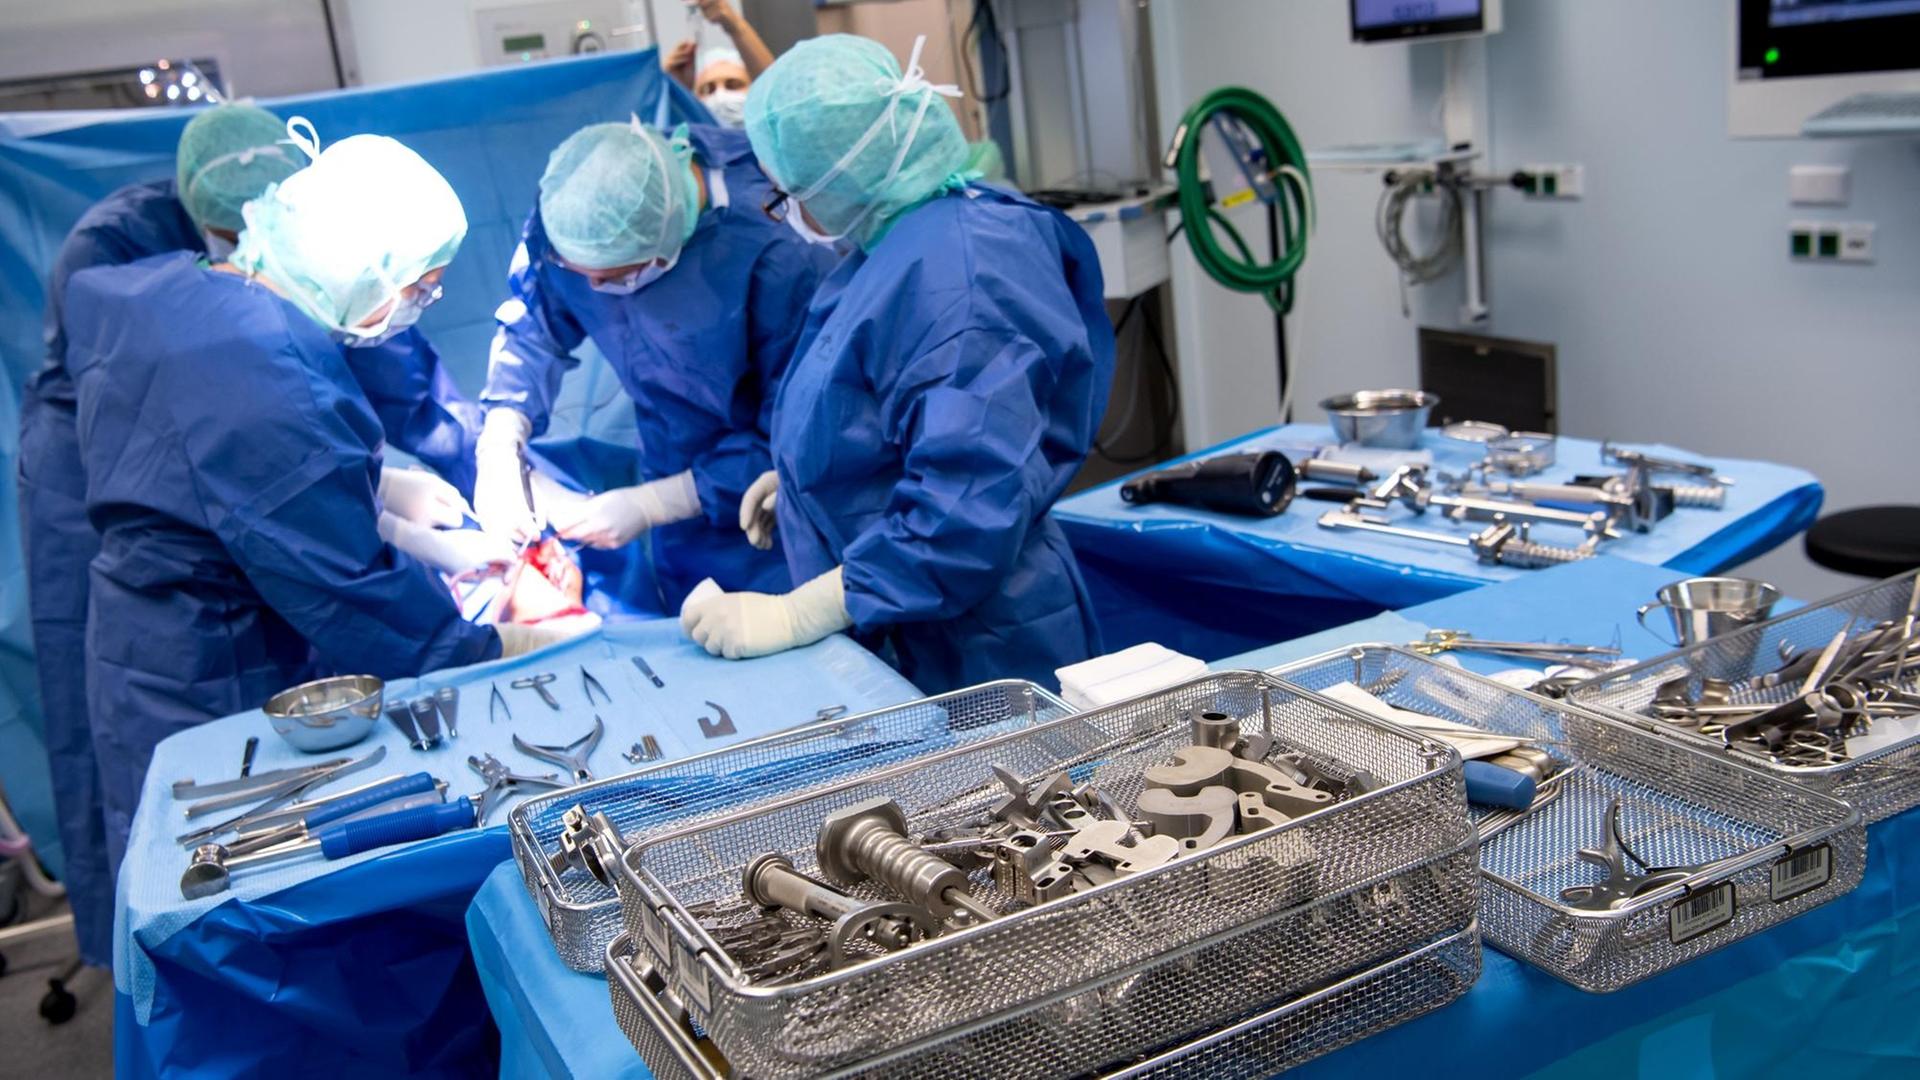 Ein Ärzteteam setzt einem Patienten während einer Knie-Operation in der Sana Klinik (OCM - Orthopädische Chirurgie München) in einem Operationssaal eine Knietotalendoprothese (Knie-TEP) ein.